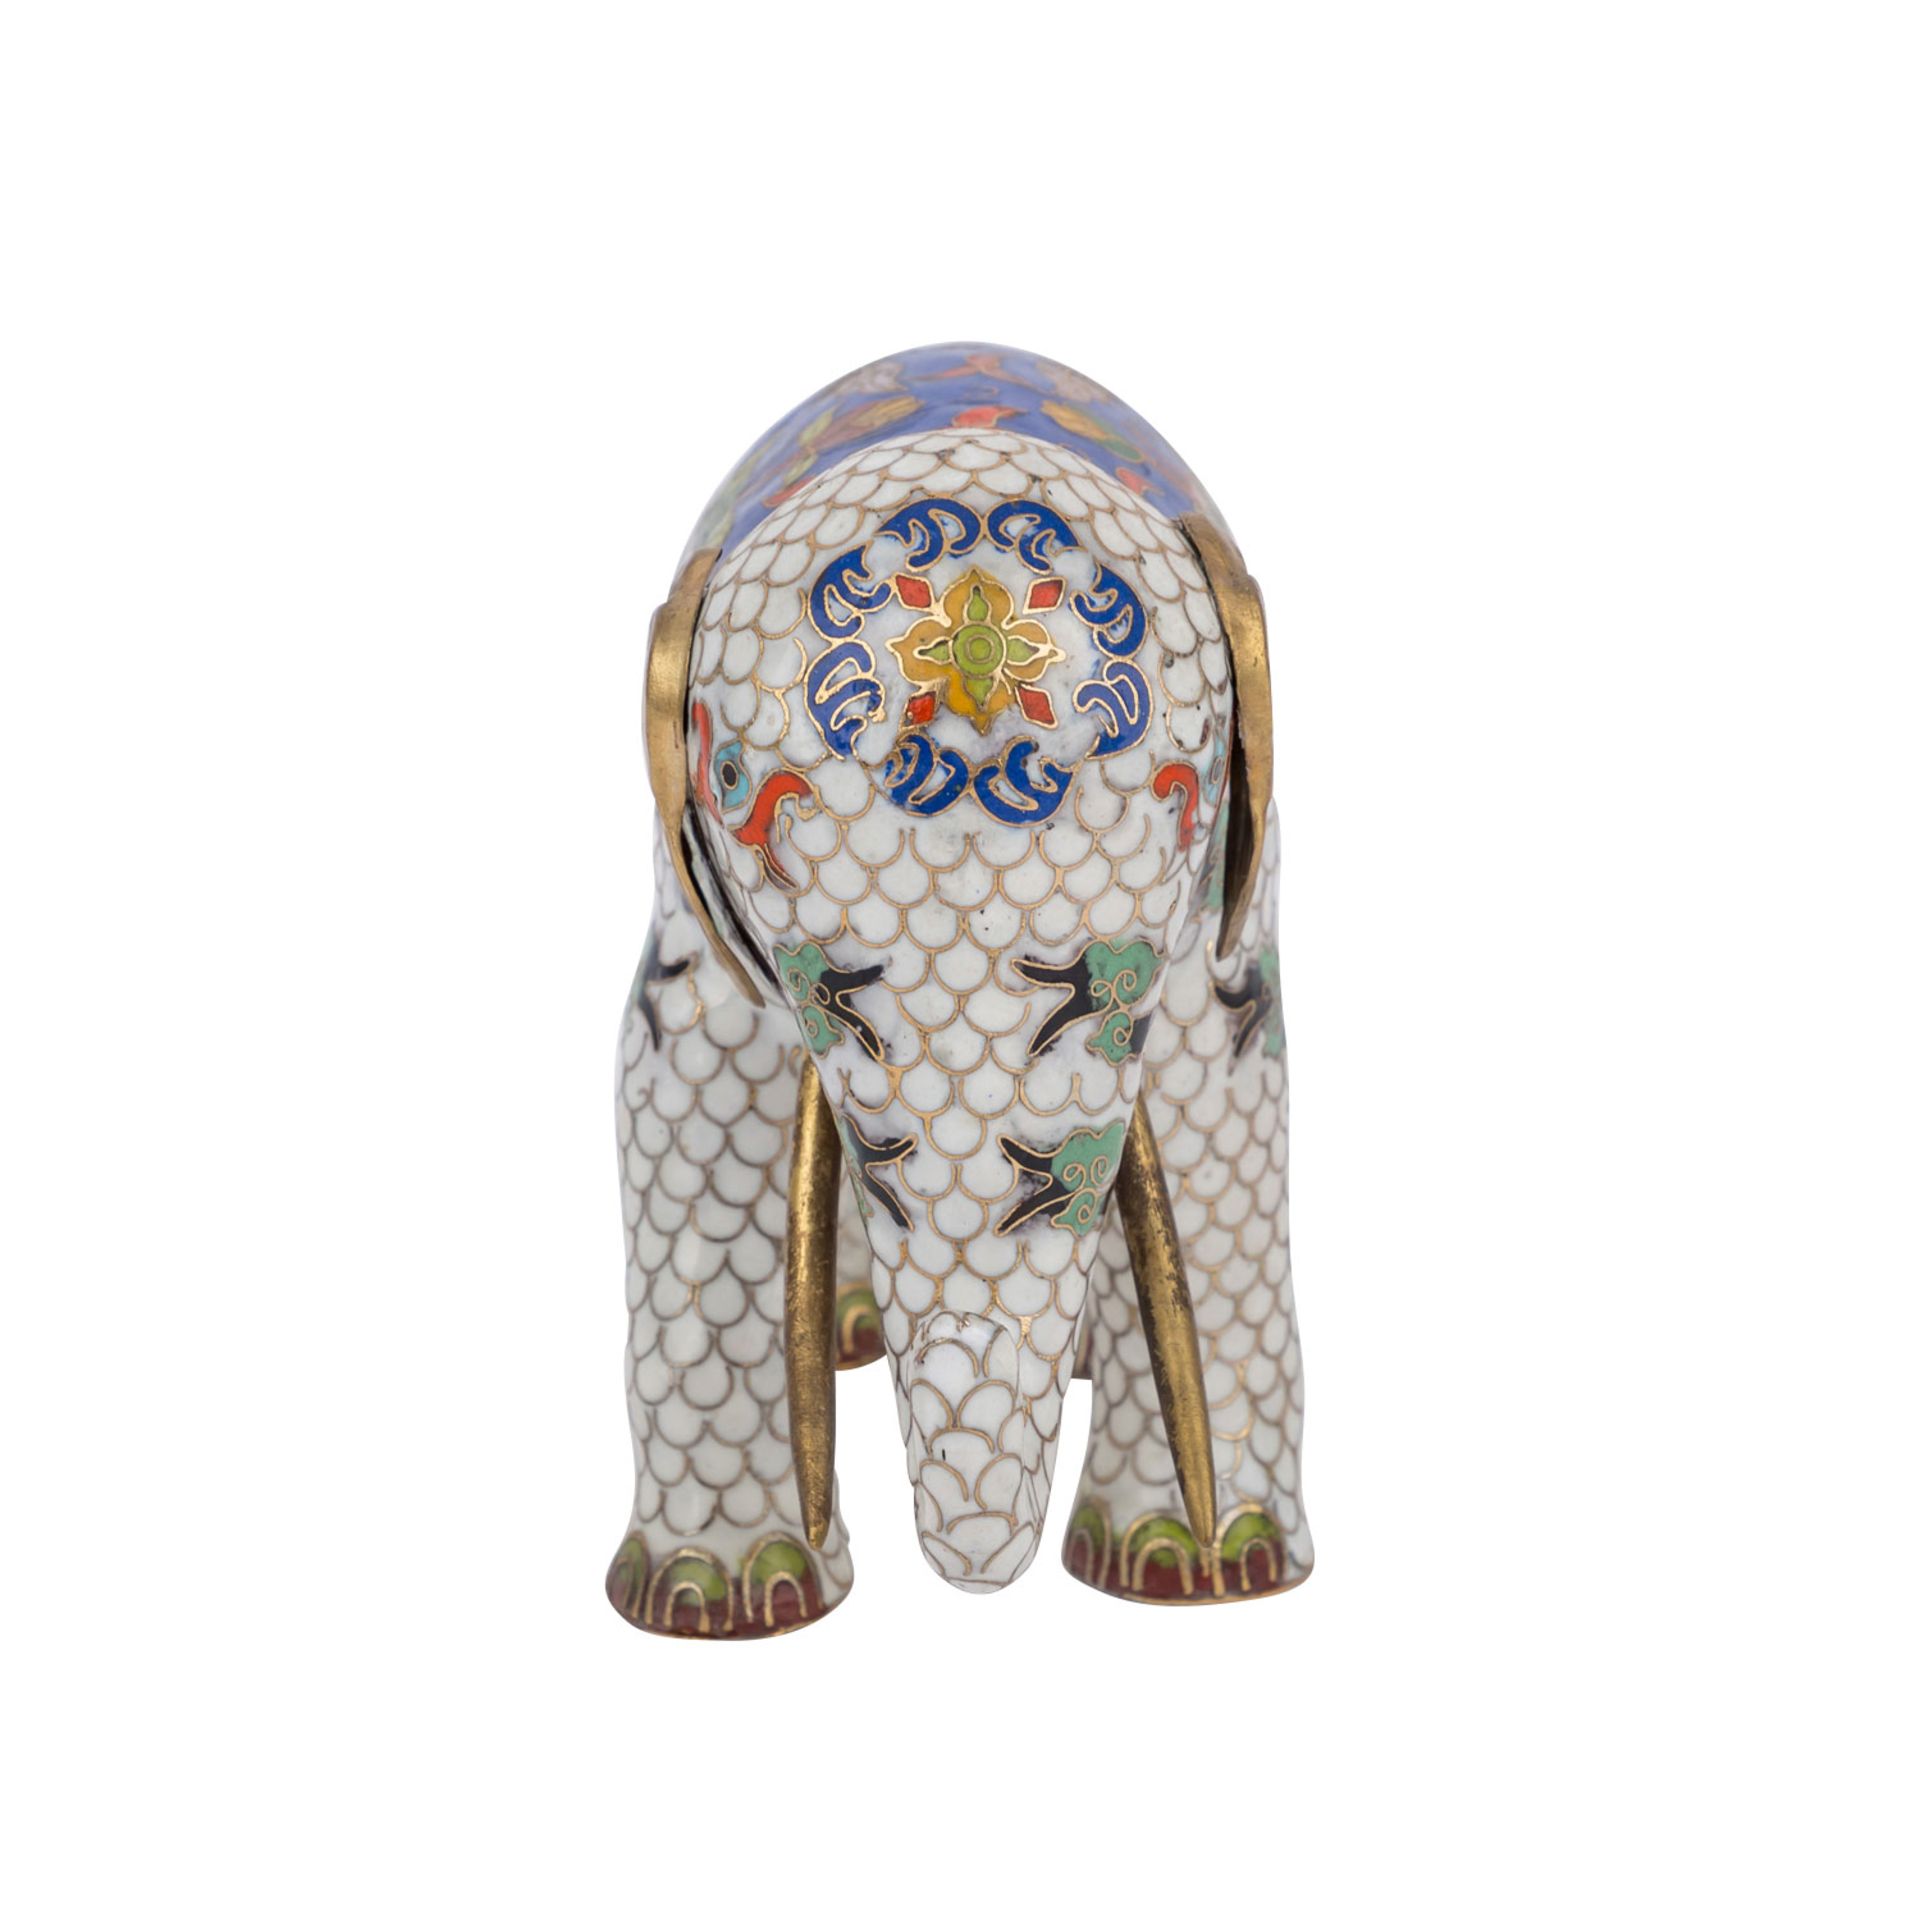 Cloisonné Elefant. CHINA.L: 22 cm. Min.besch..Cloisonné enamel elephant. China.Lenght: 22 cm. - Bild 2 aus 4